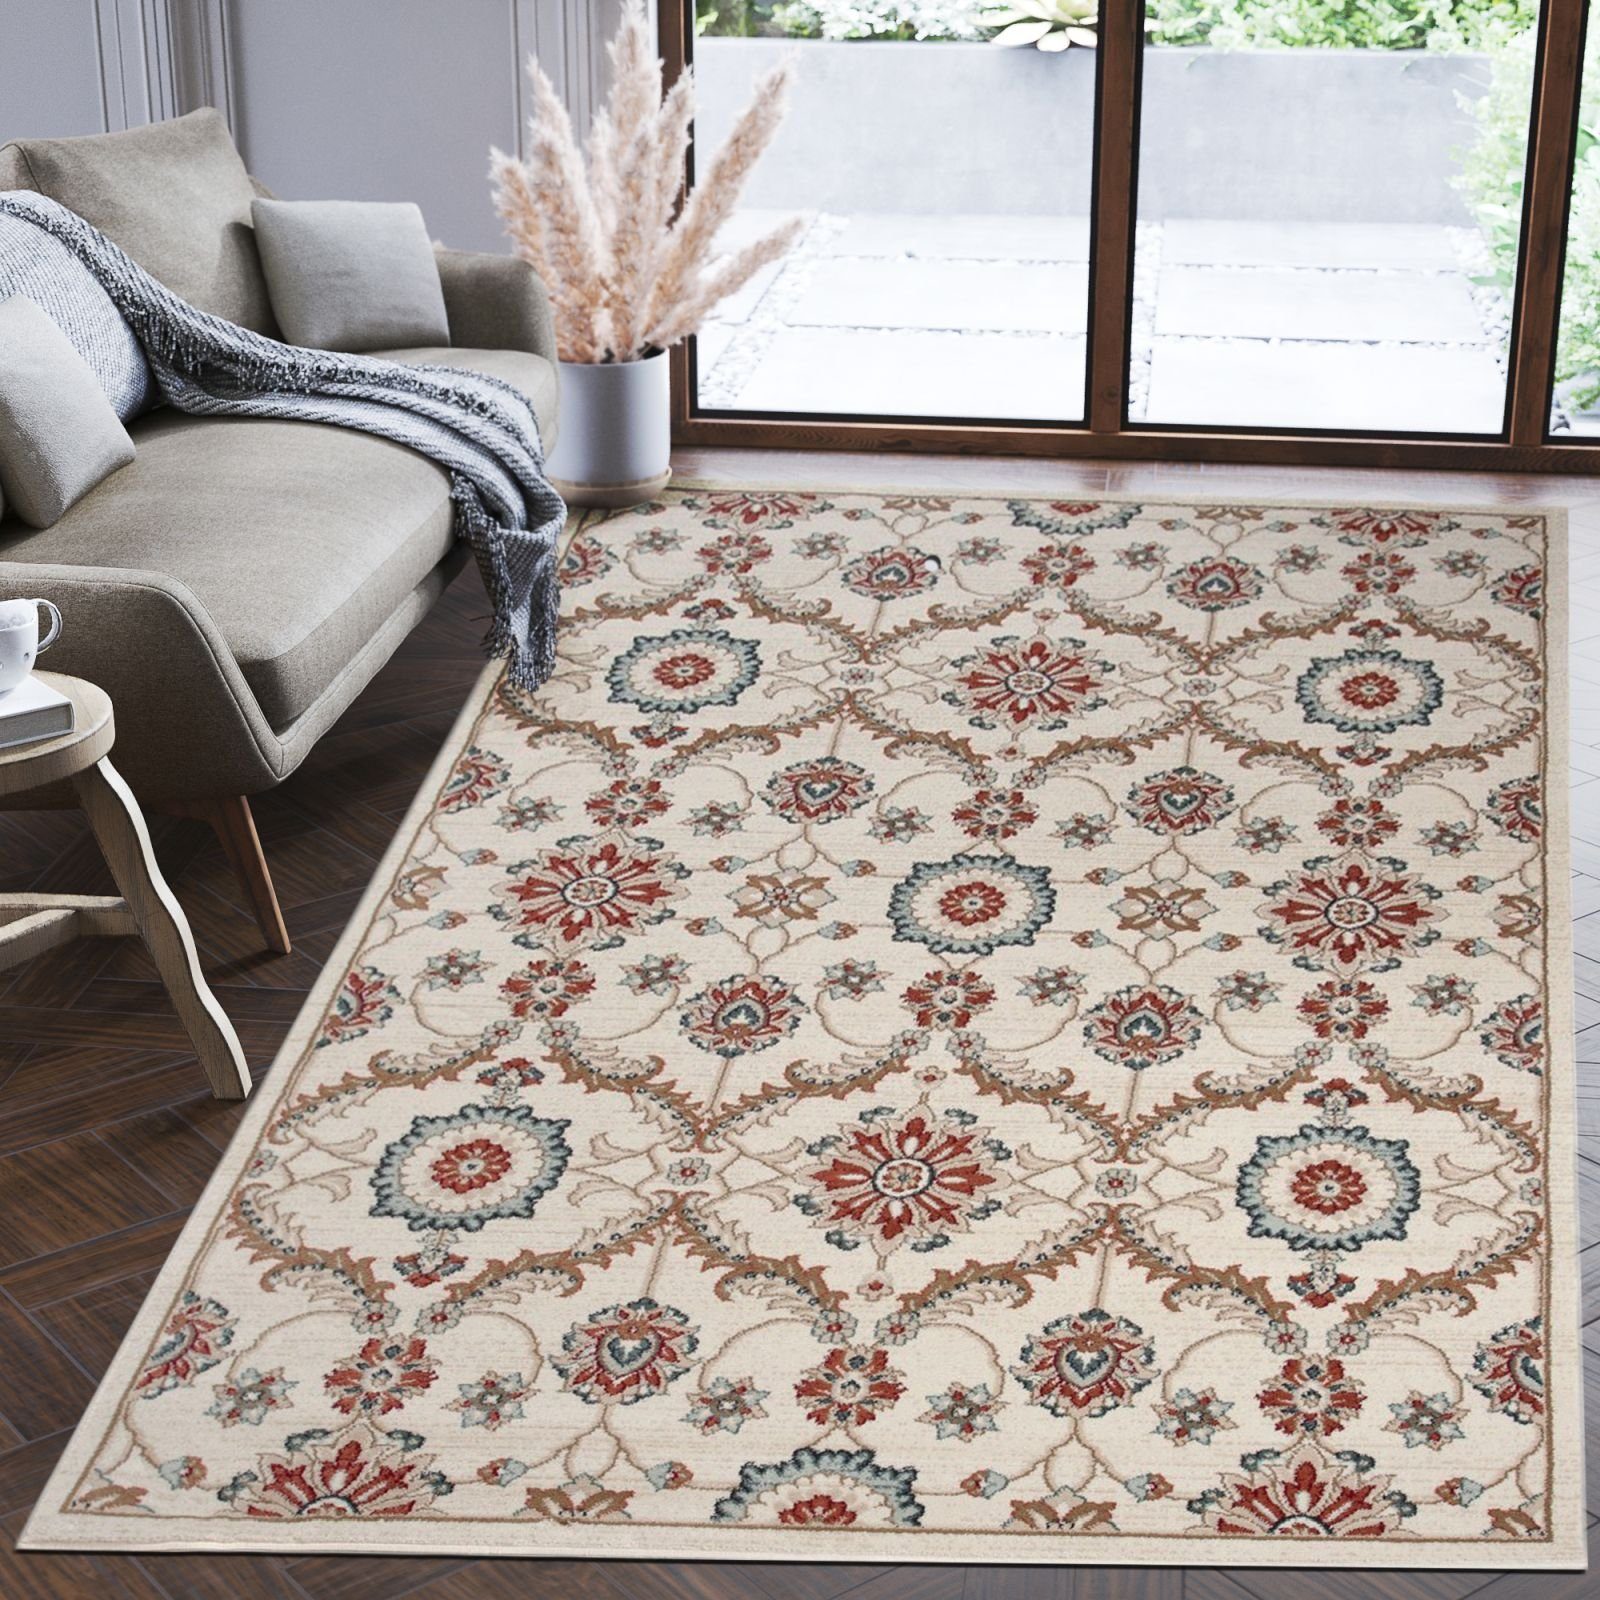 Orientteppich Oriente Teppich - Traditioneller Teppich Orient Creme Beige Ivory, Mazovia, 60 x 100 cm, Geeignet für Fußbodenheizung, Pflegeleicht, Wohnzimmerteppich